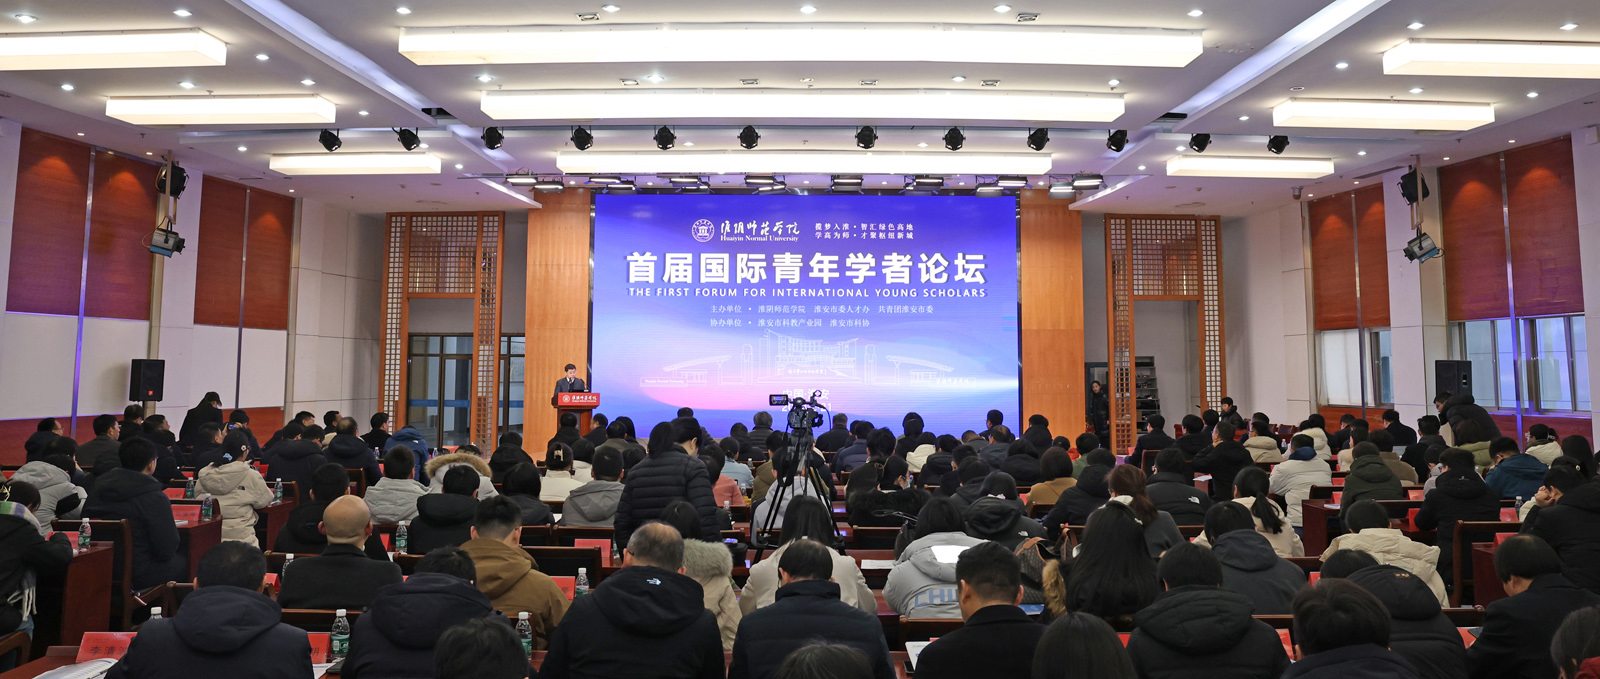 必博手机网页版首届国际青年学者论坛隆重举行